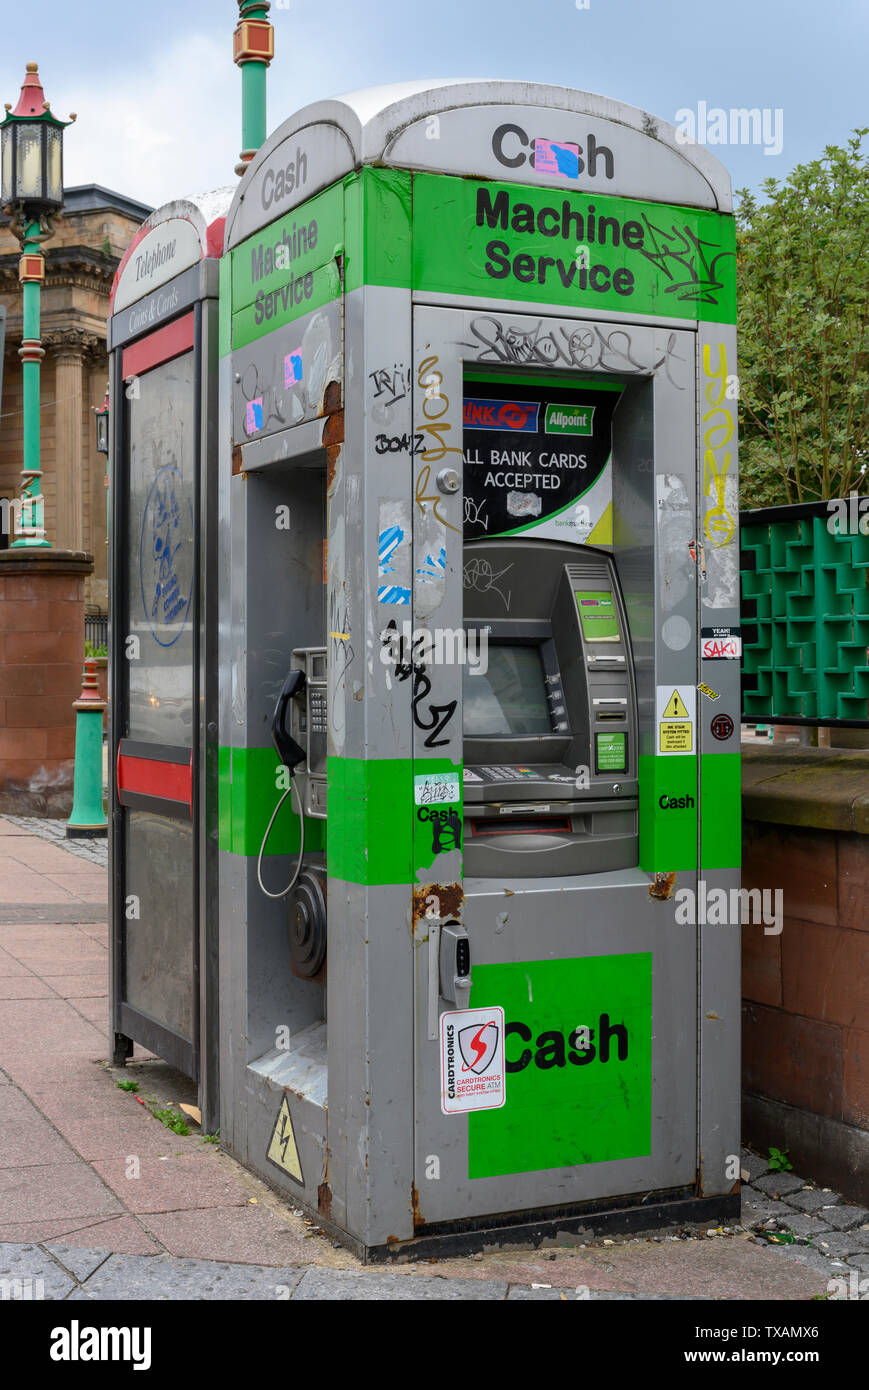 Vieux téléphone PO box converti pour être utilisé comme un distributeur automatique de billets, Liverpool, Angleterre, Royaume-Uni. Banque D'Images